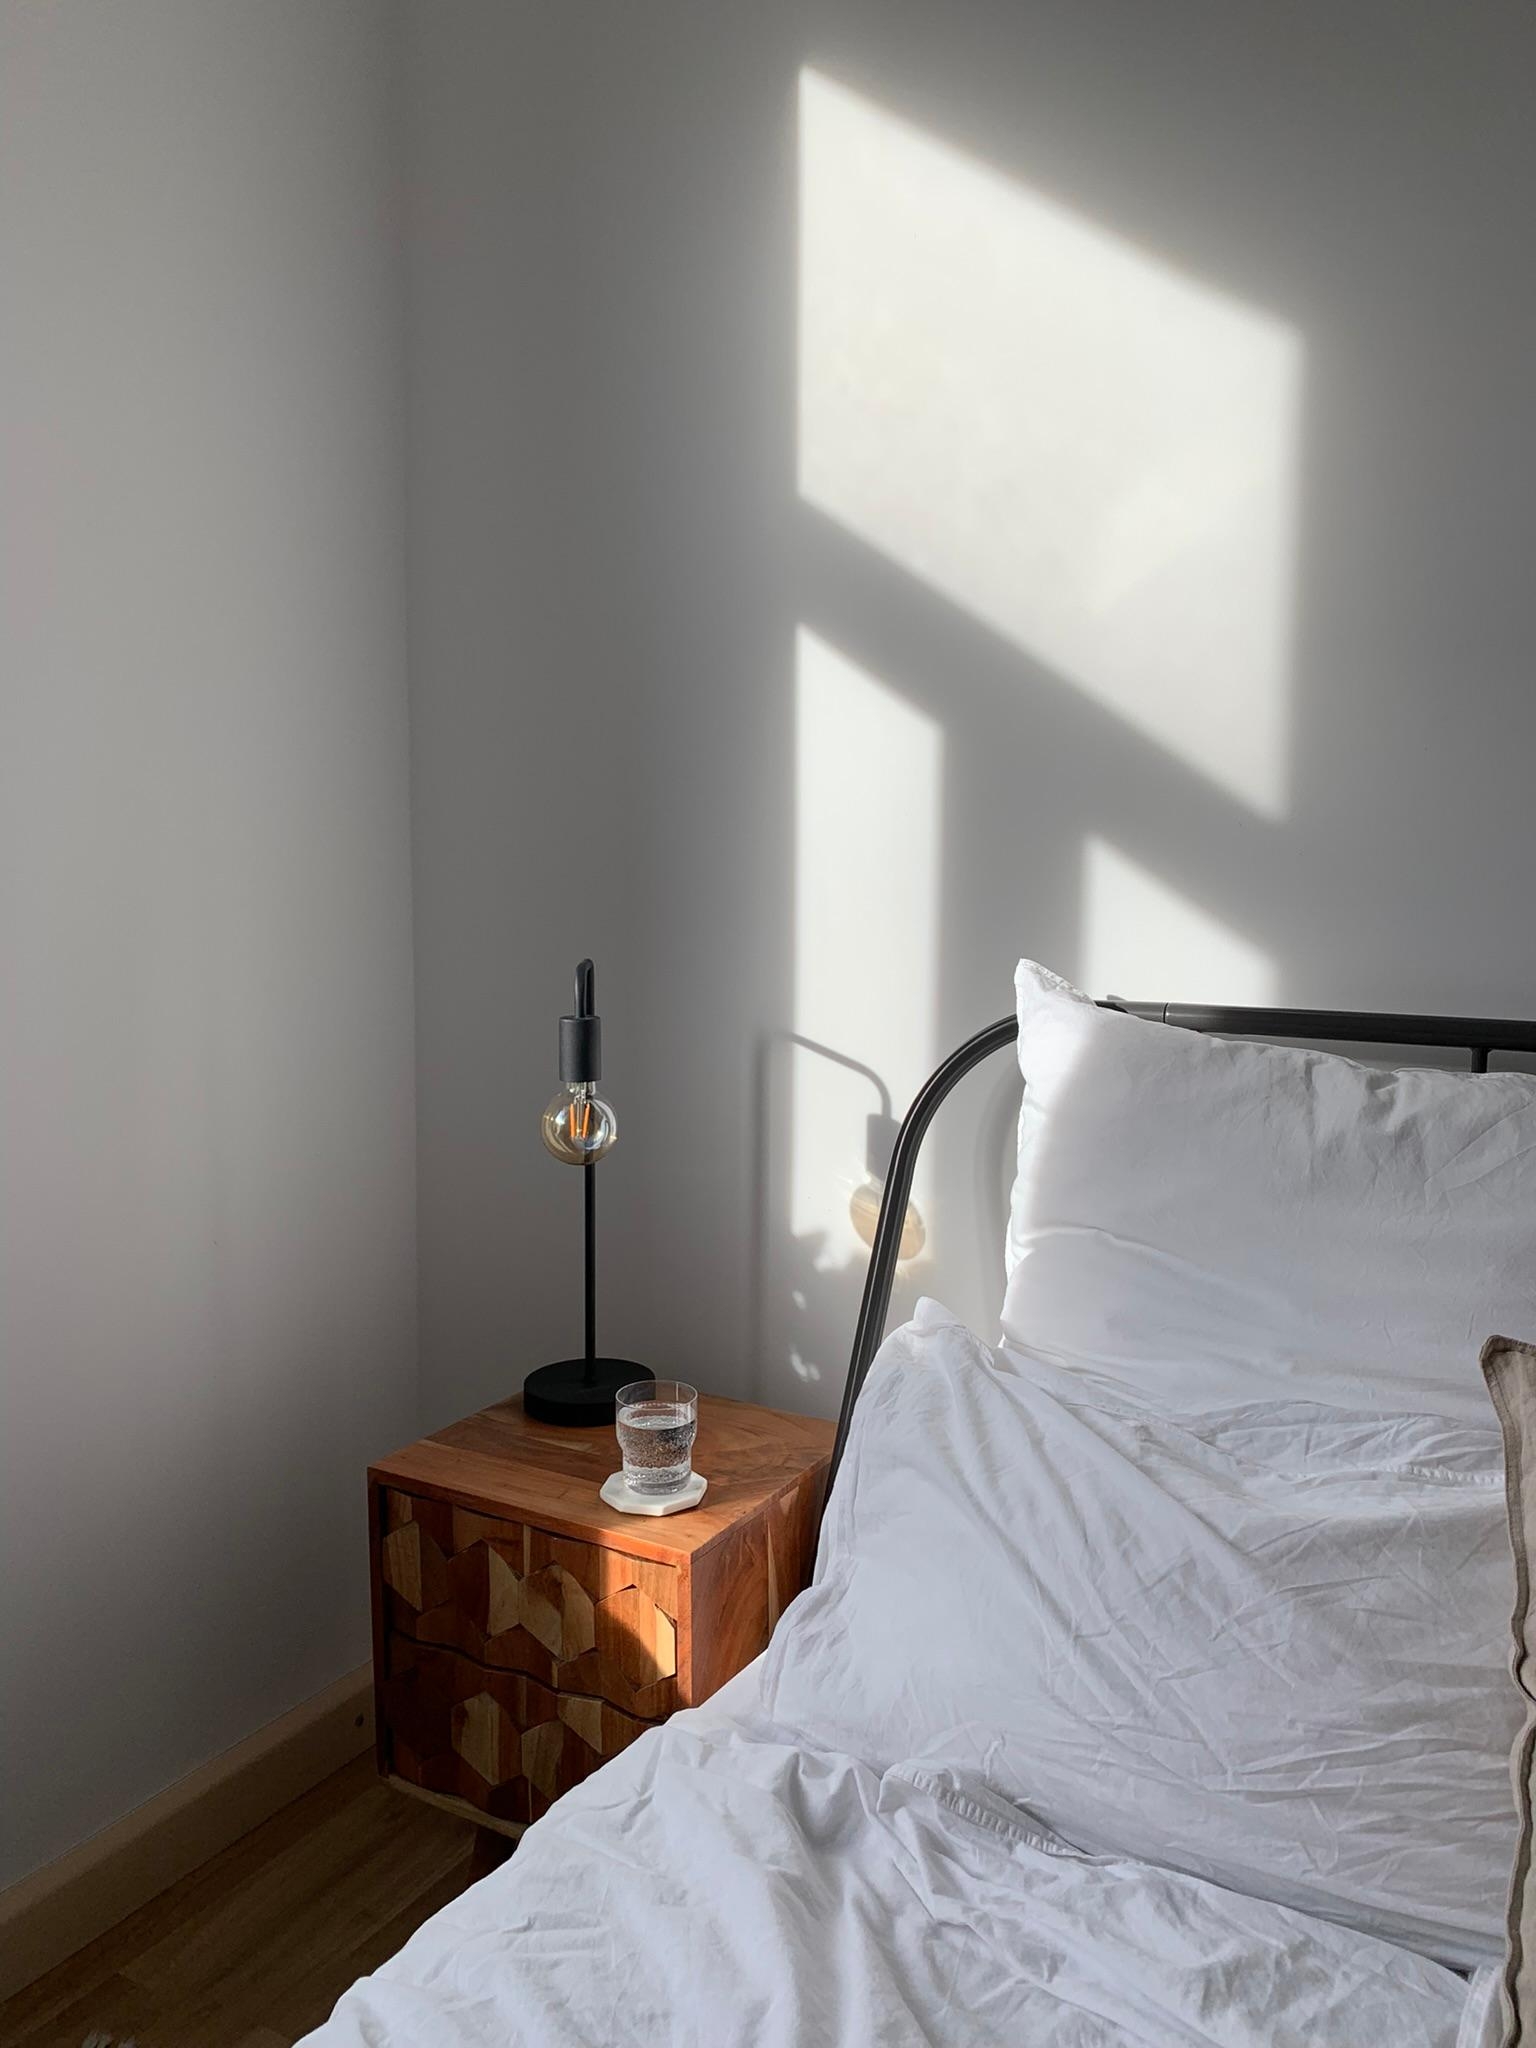 Heute kam mal wieder die Sonne raus ☀️ Lieb‘s! #schlafzimmer #minimalistisch #lampe #nachttisch #winter #altbau #licht 